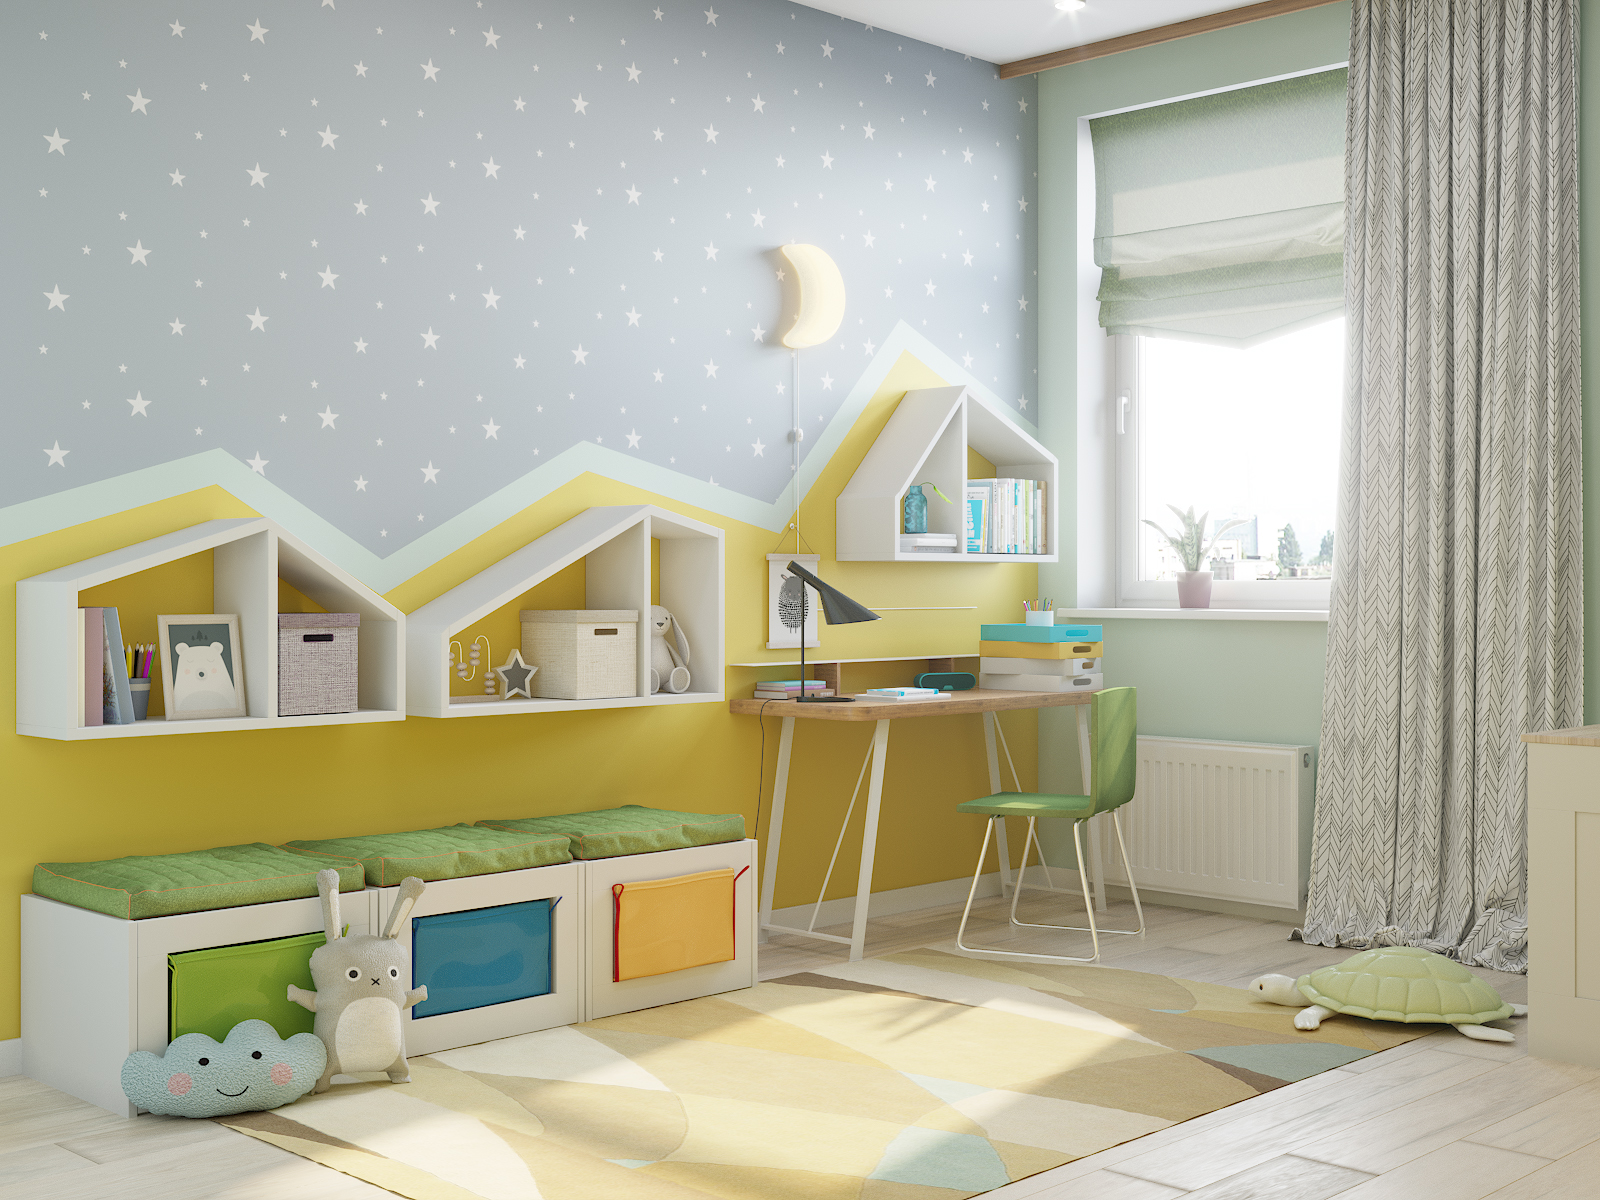 Детская комната с зигзагами в 3d max corona render изображение